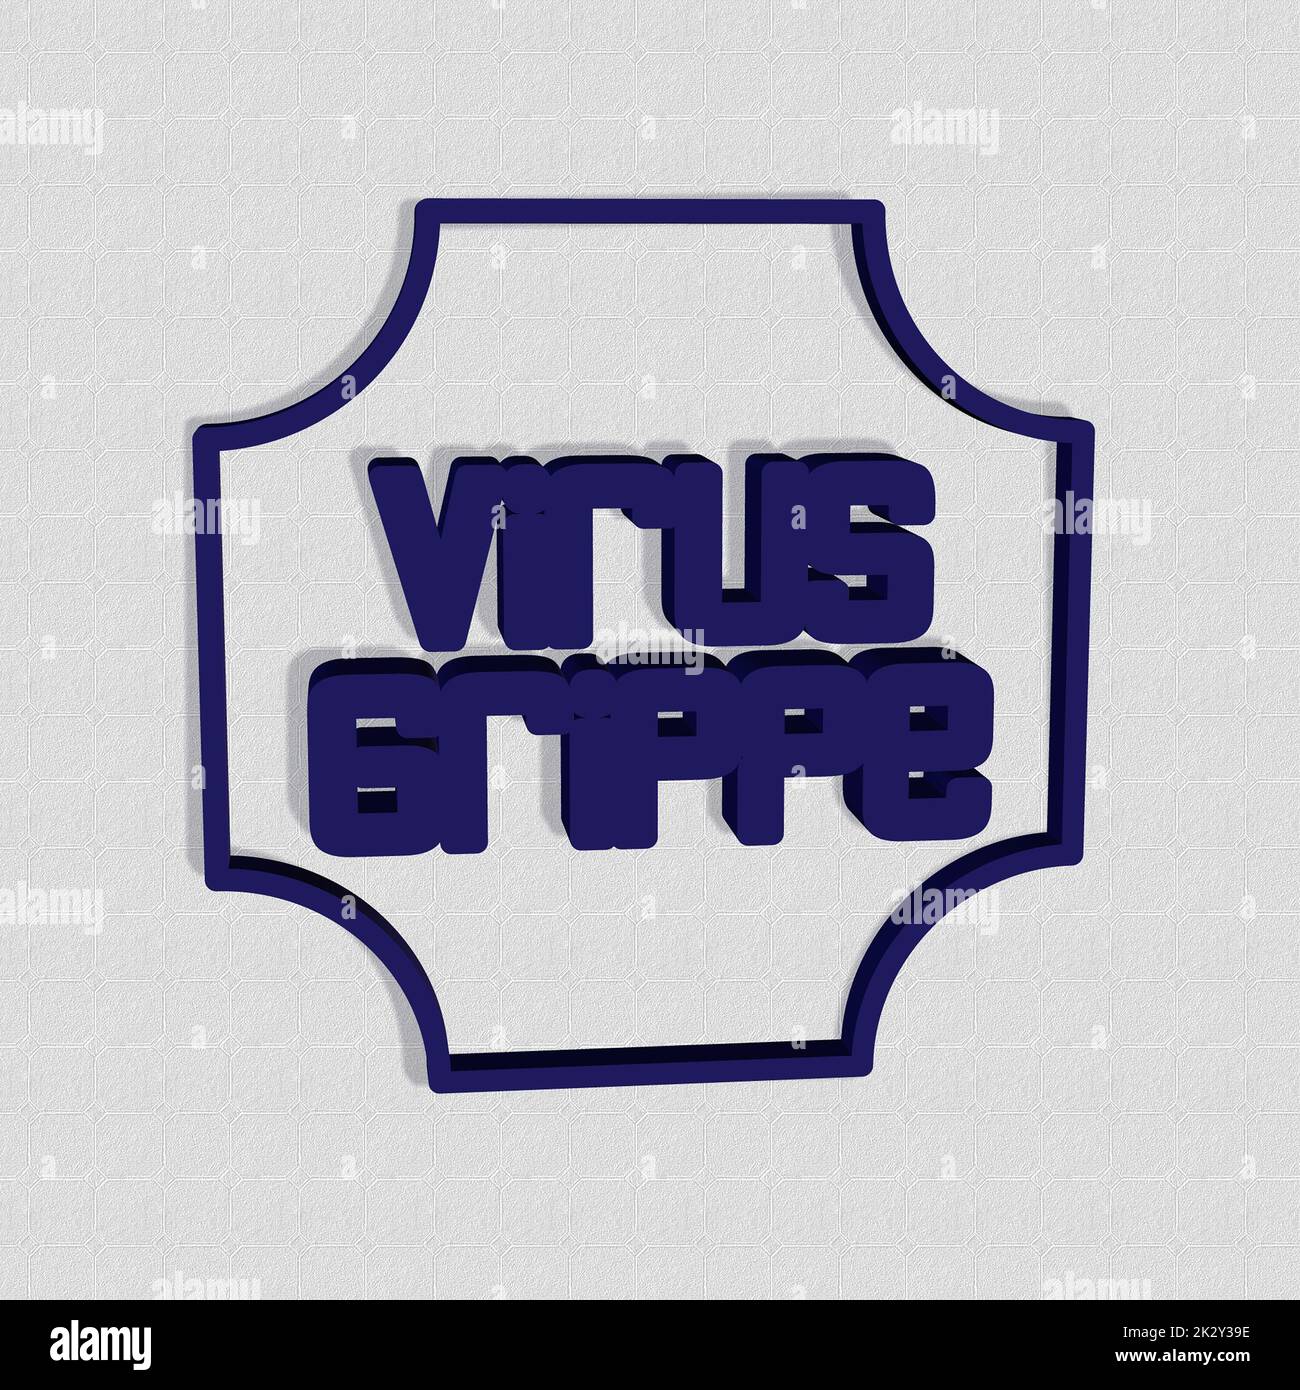 'Virusgroppe' = 'Virus flu' - parola, lettere o testo come illustrazione 3D, rendering 3D, computer graphics Foto Stock